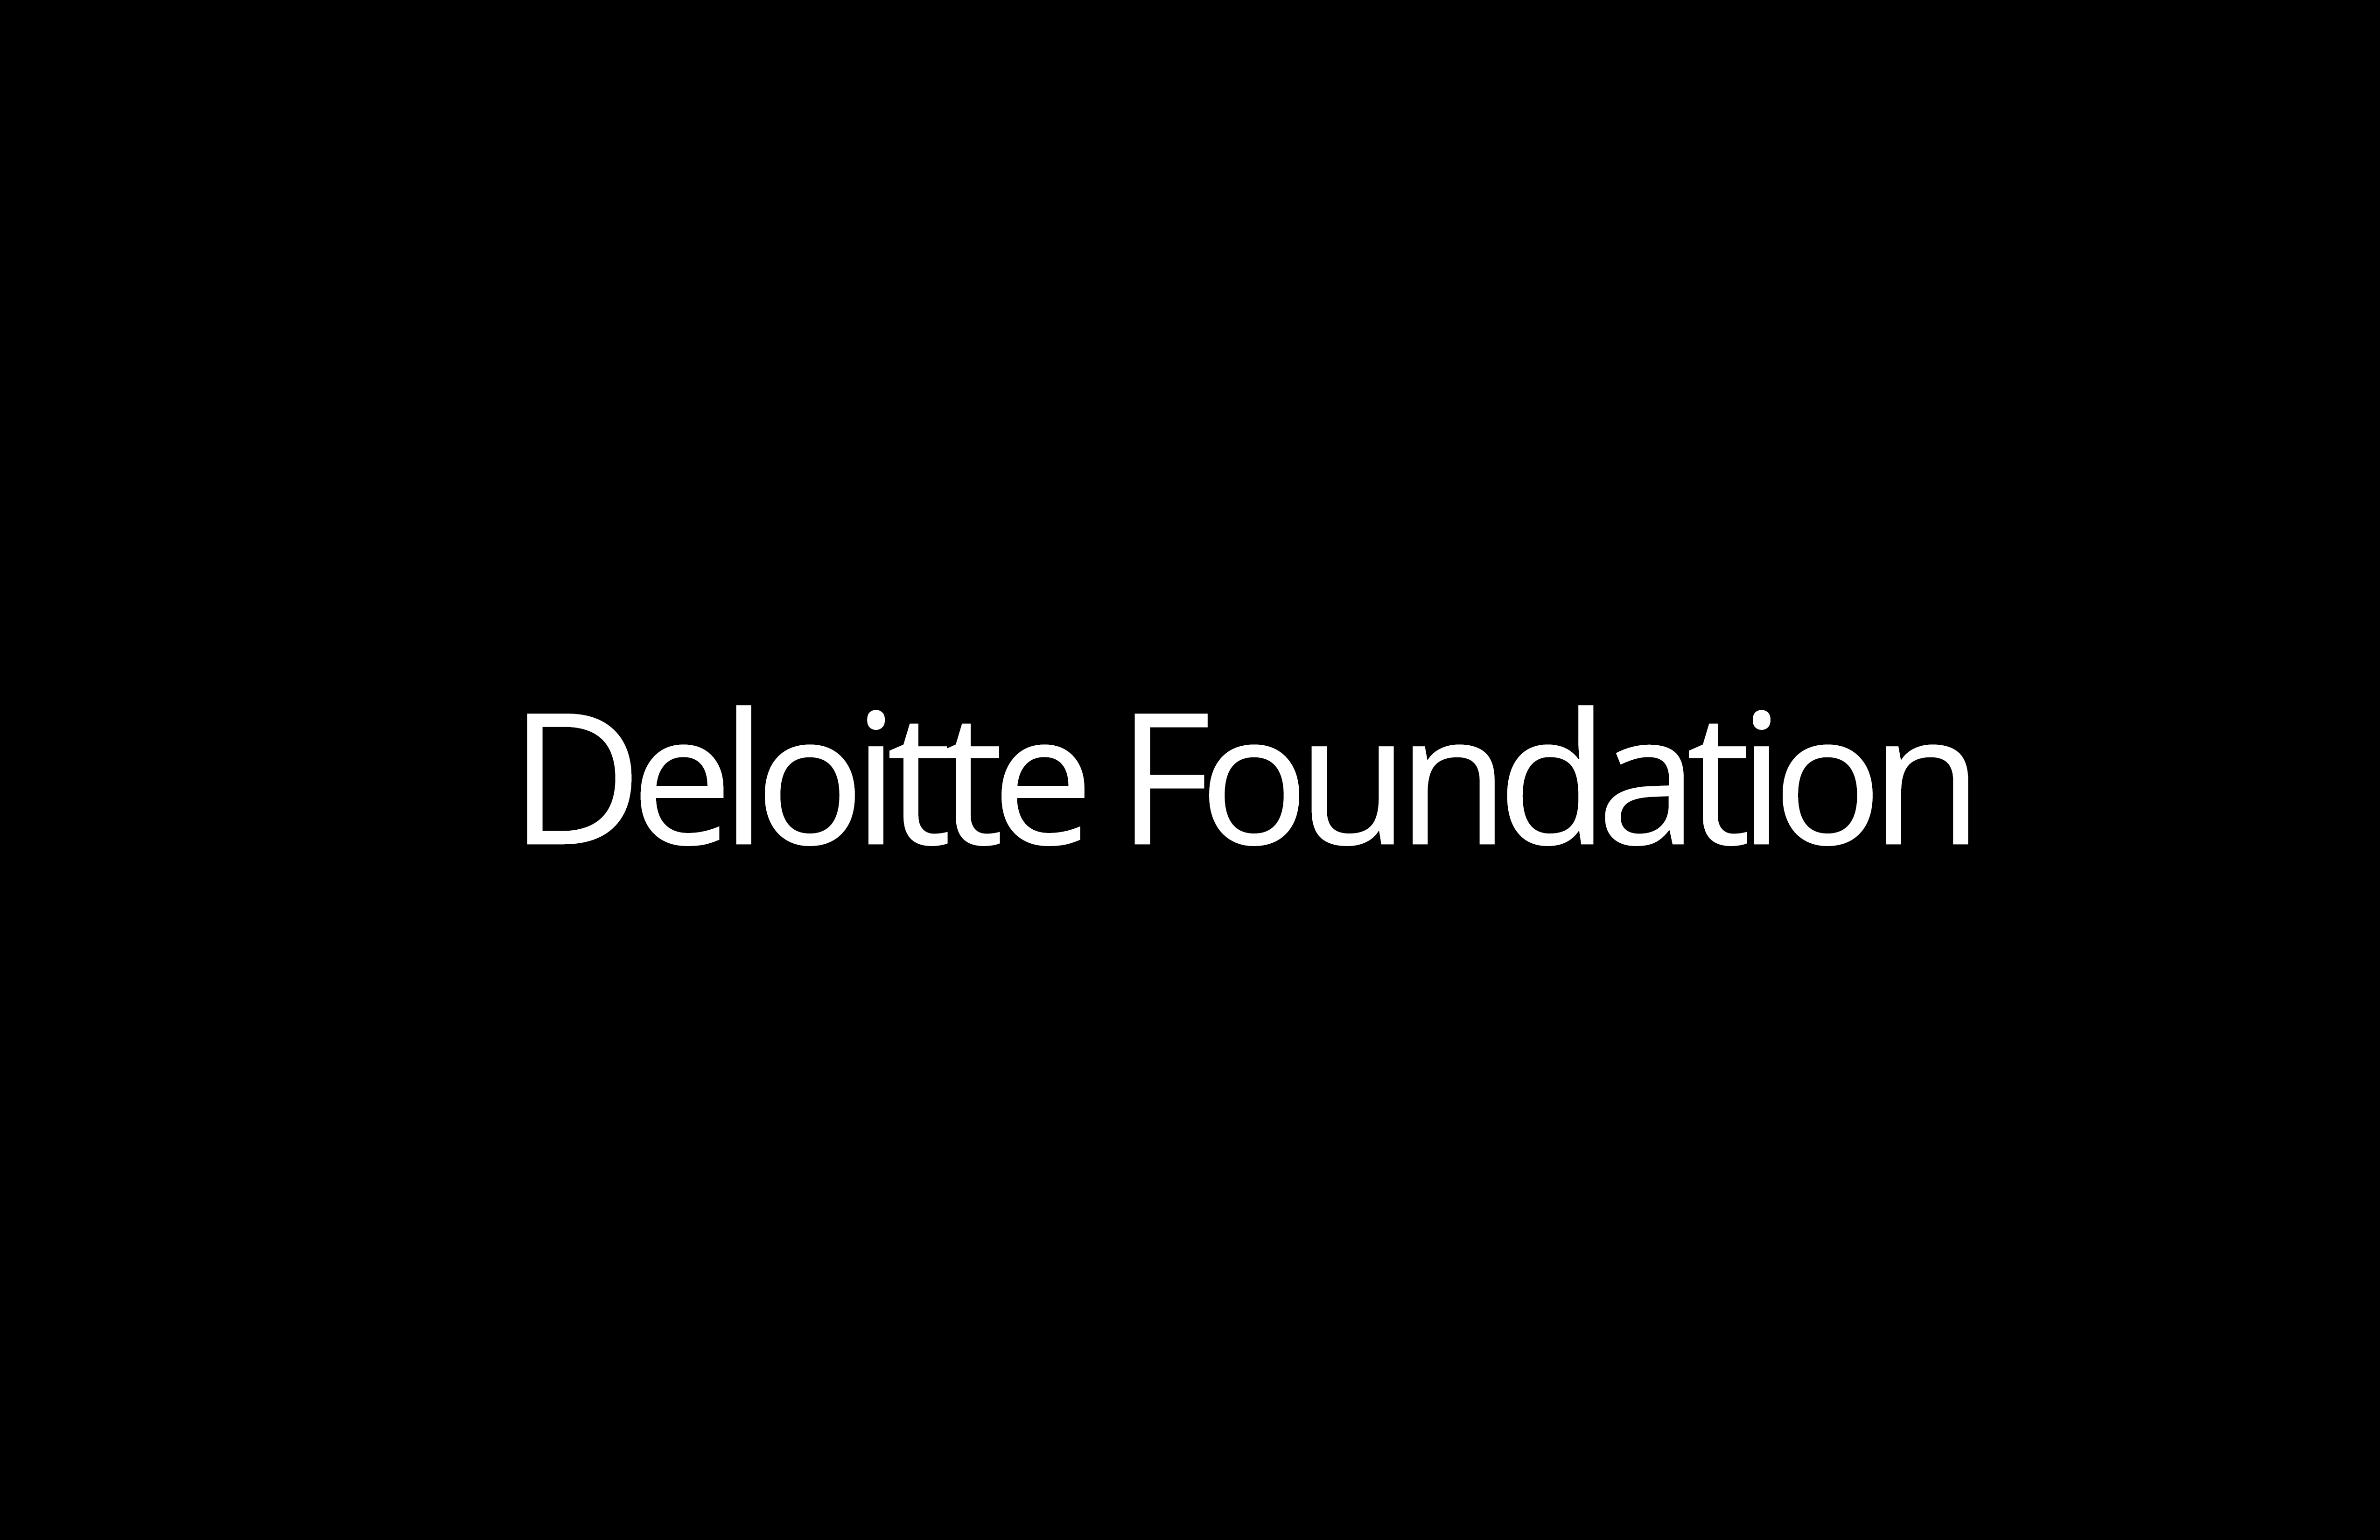 Deloitte Foundation wordmark